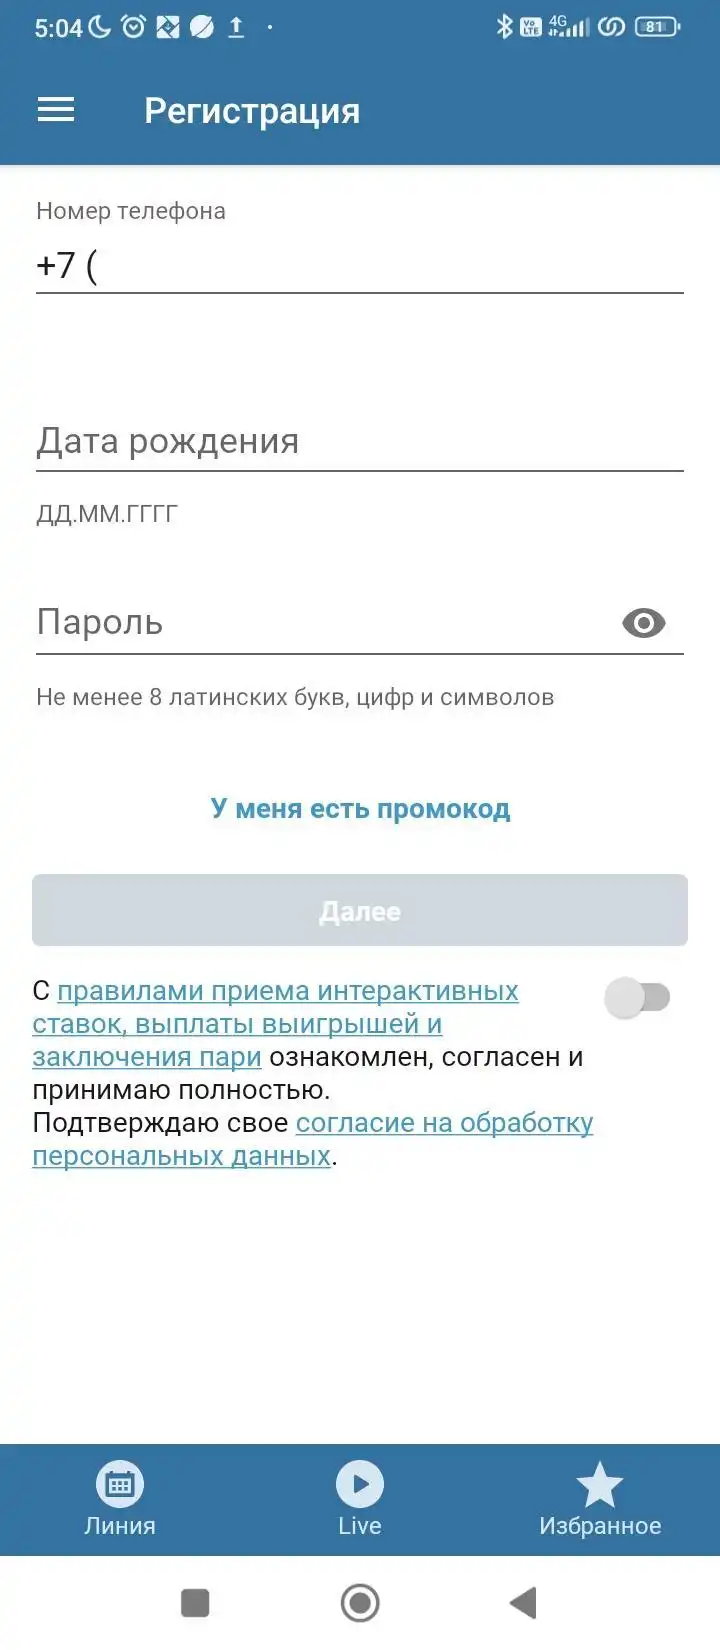 Регистрация и промокод в мобильном приложении Бетсити на андроид